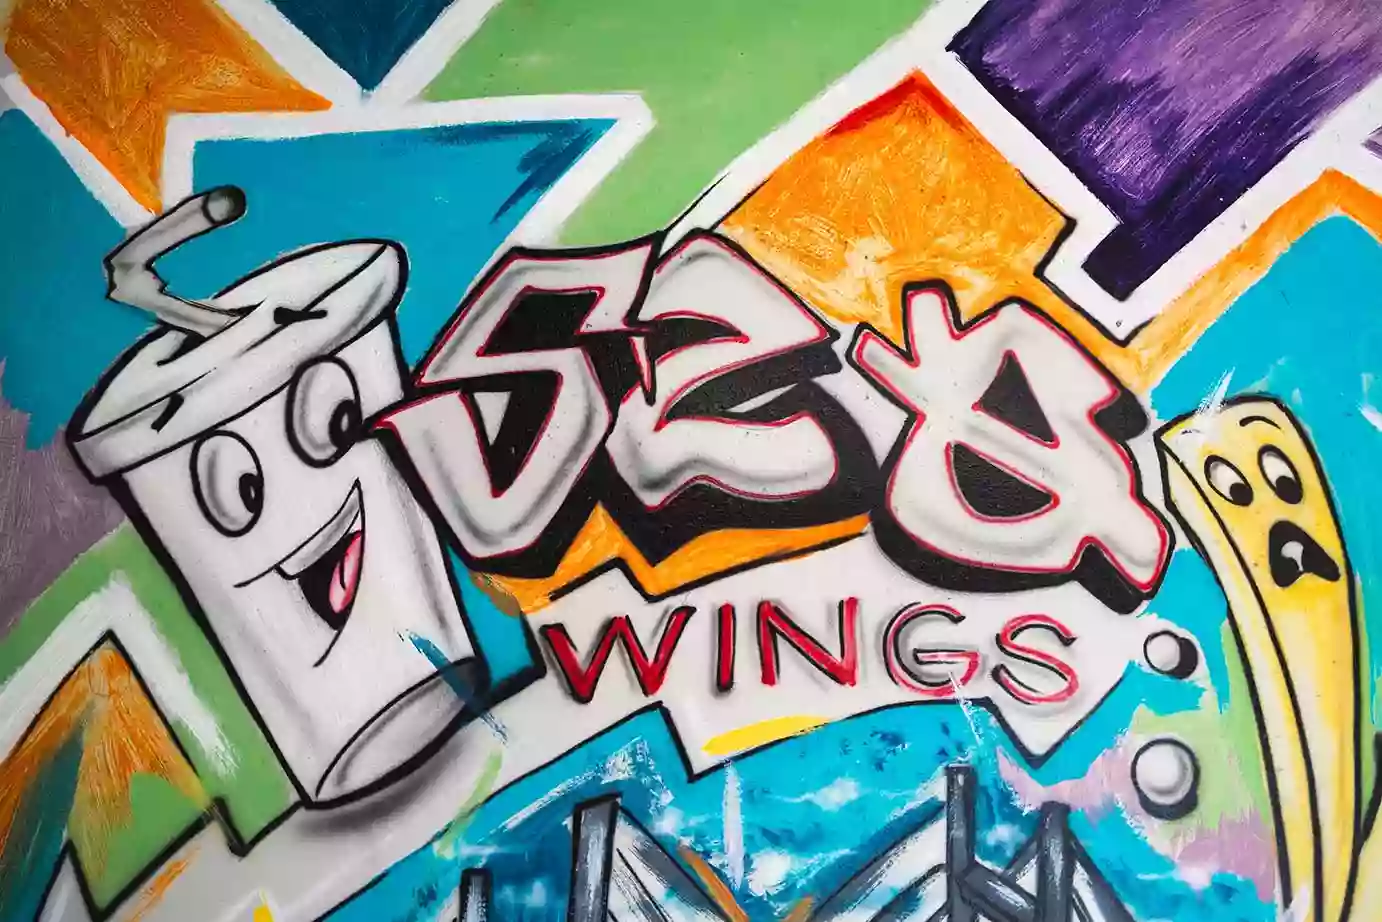 520 Wings